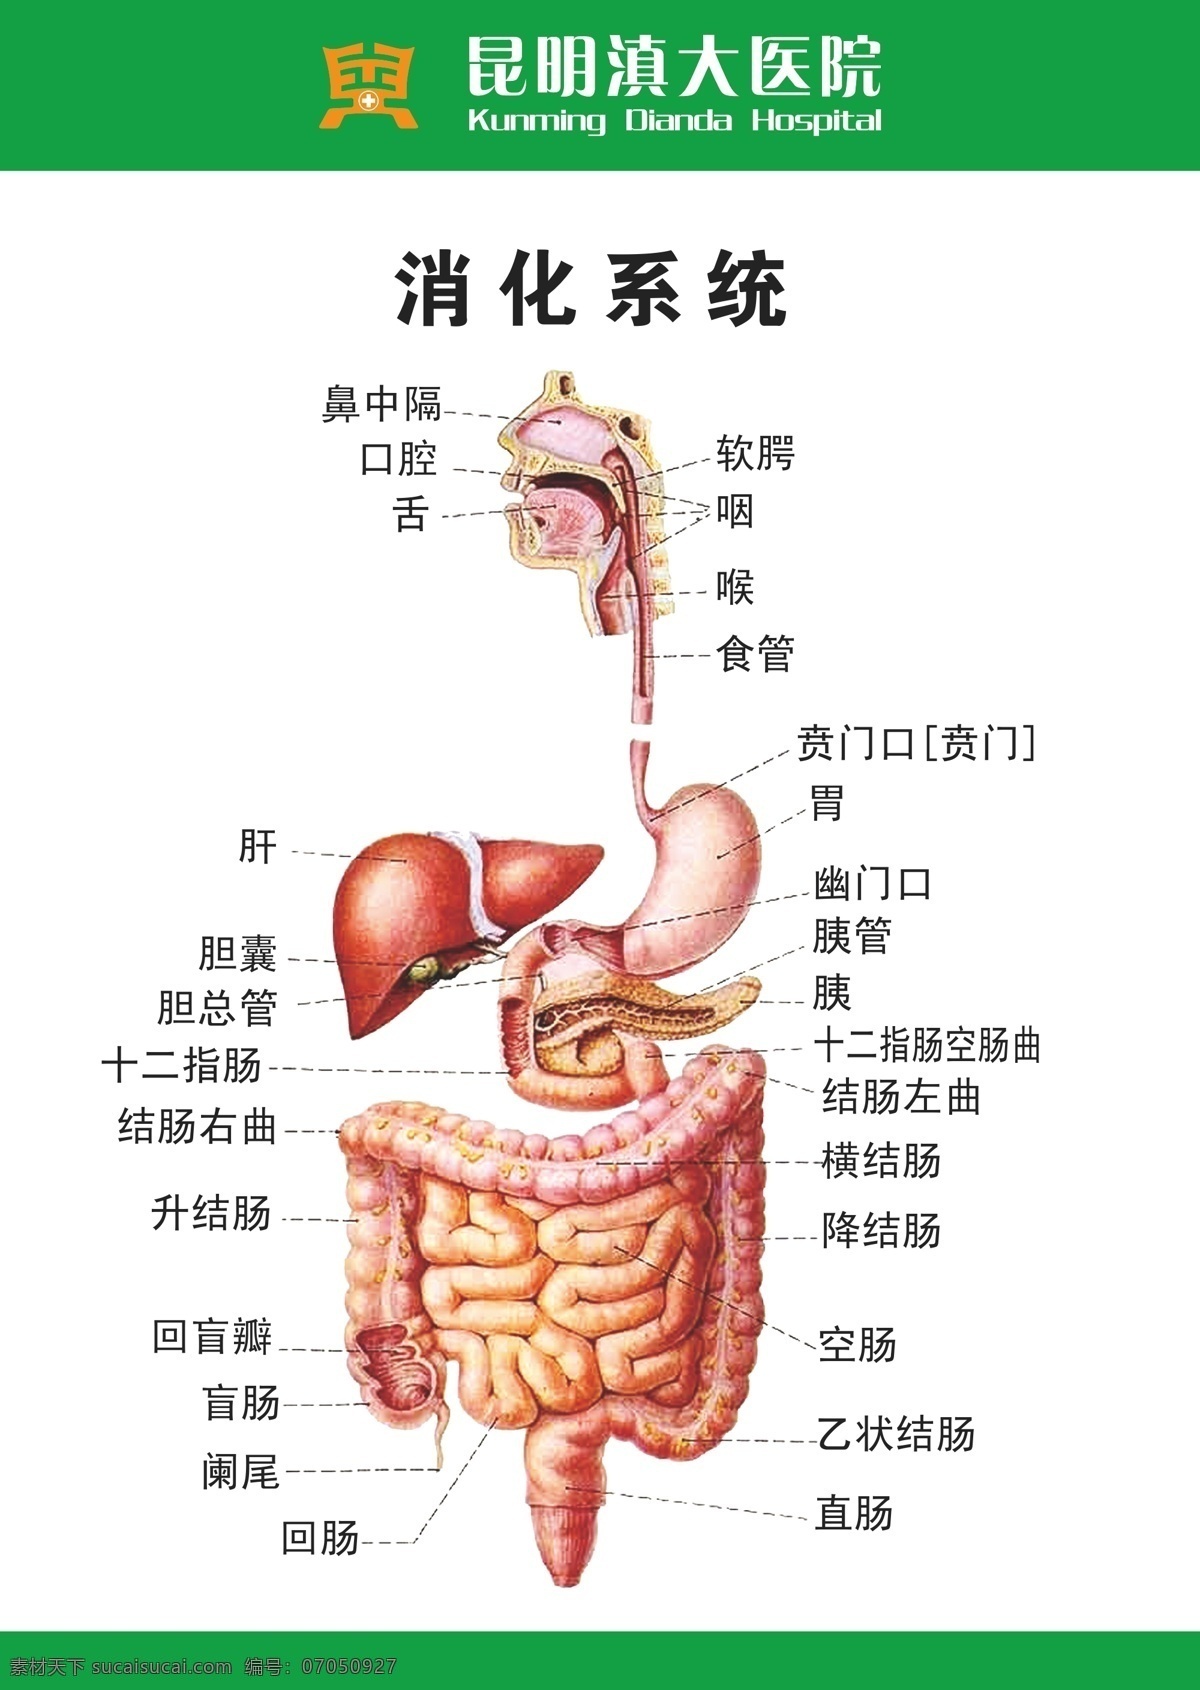 滇大医院肠胃 医院 肠胃 消化系统模式 矢量设计 矢量